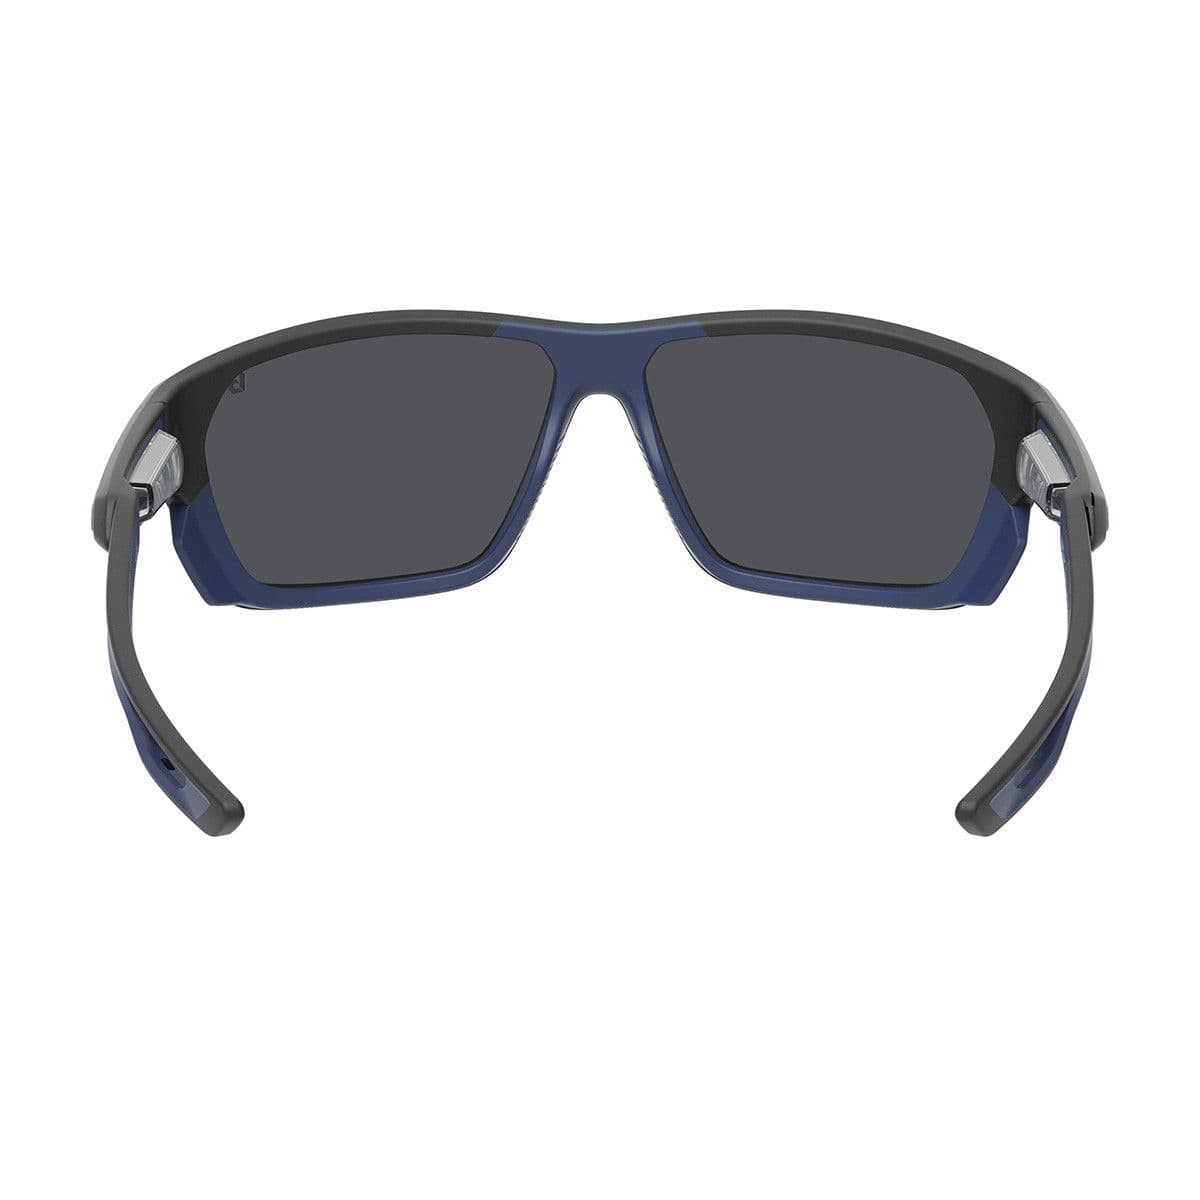 Bolle Airfin Sunglasses (sale)